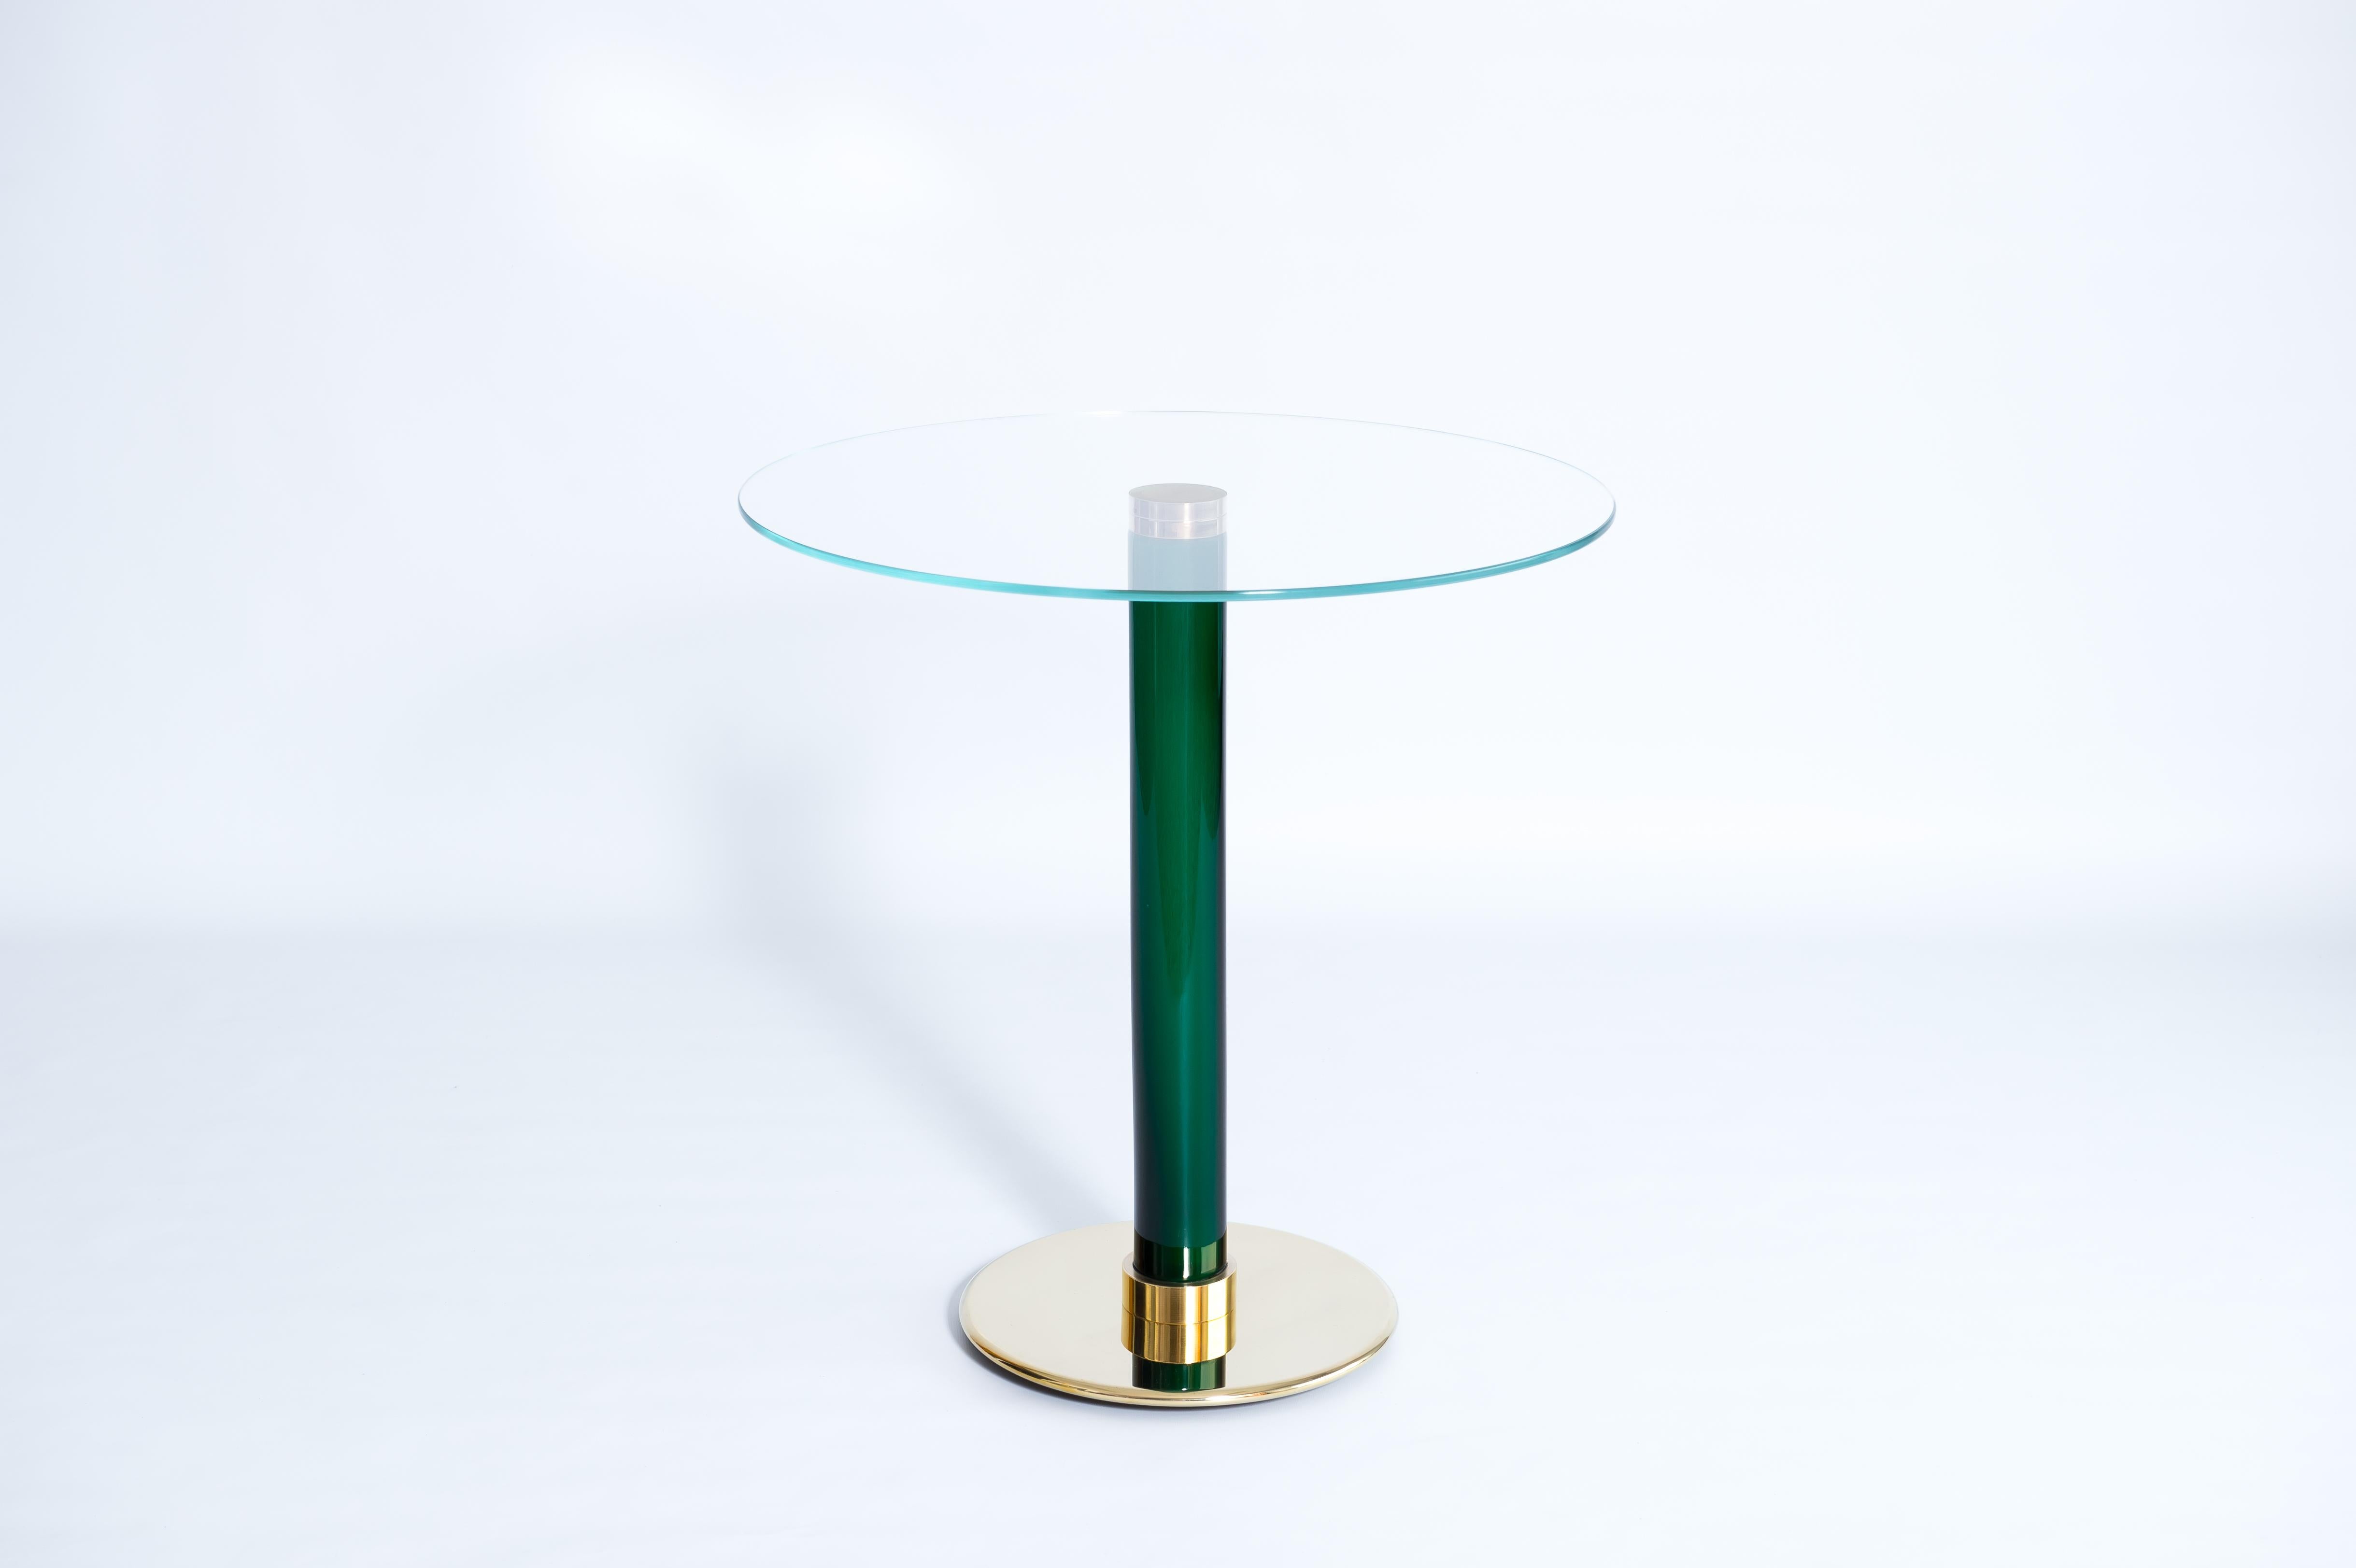 Außergewöhnlicher italienisch-venezianischer Cocktailtisch aus grünem geblasenem Murano-Glas, 1990er Jahre.
Dieser raffinierte Murano-Glastisch besteht aus einem stabilen Messingfuß, einer Säule aus grünem Glas und einer runden Platte aus klarem